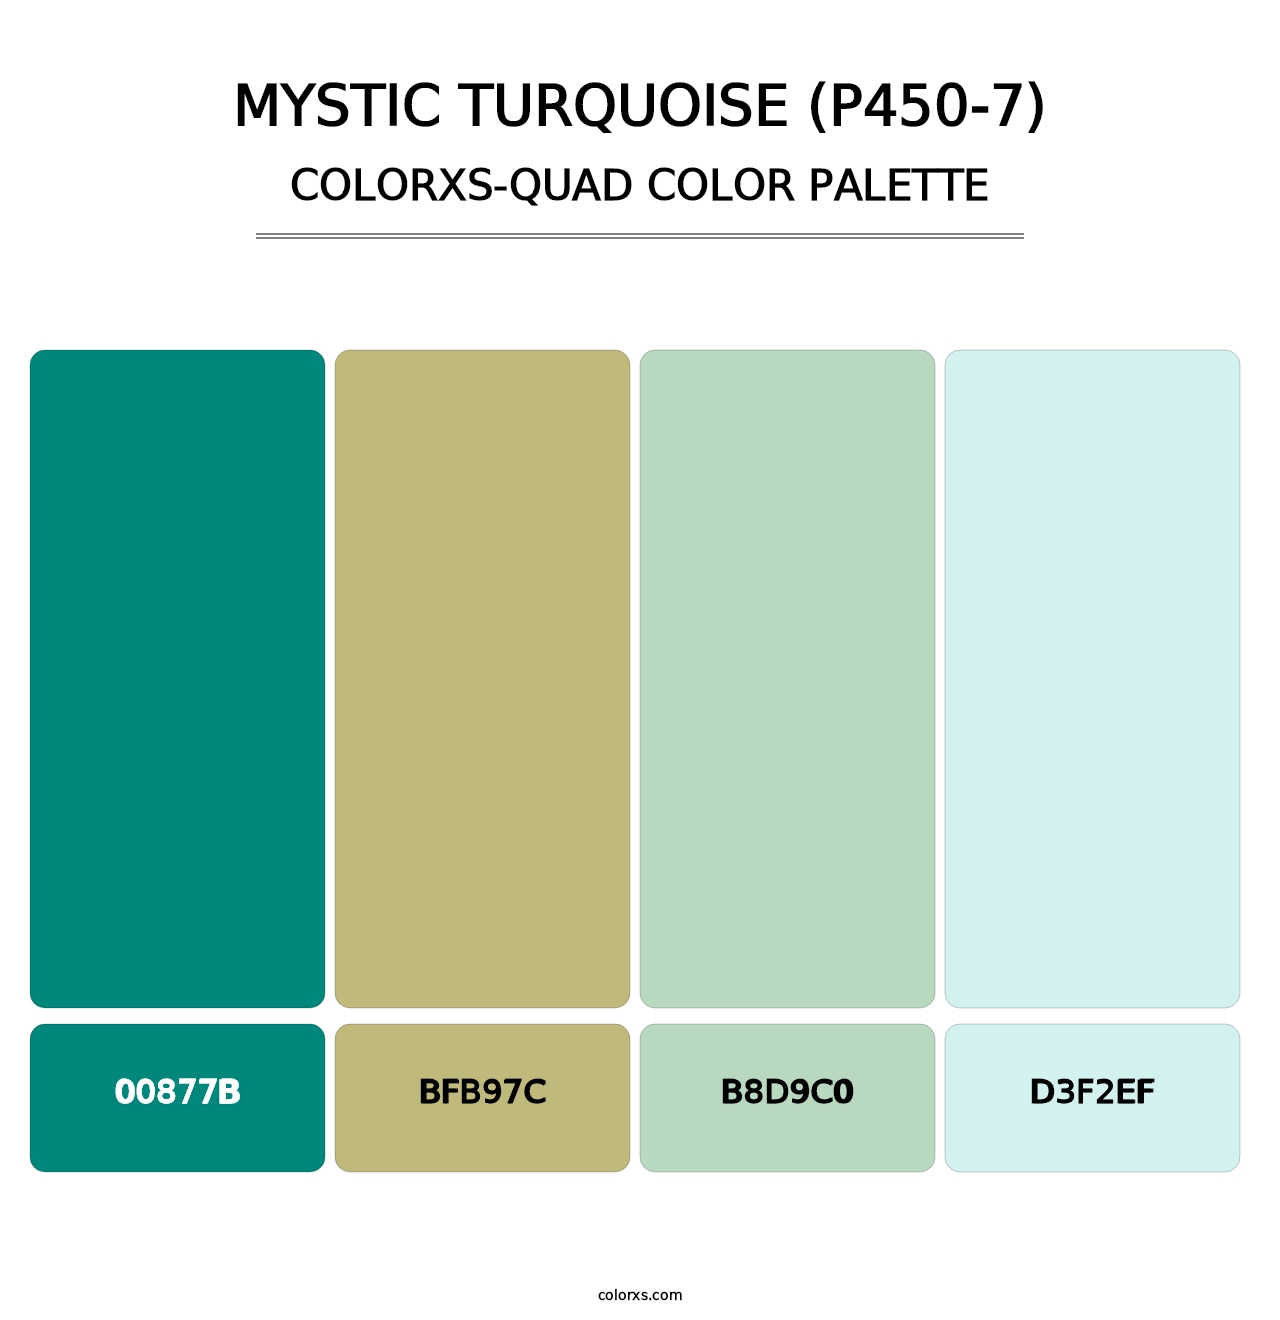 Mystic Turquoise (P450-7) - Colorxs Quad Palette